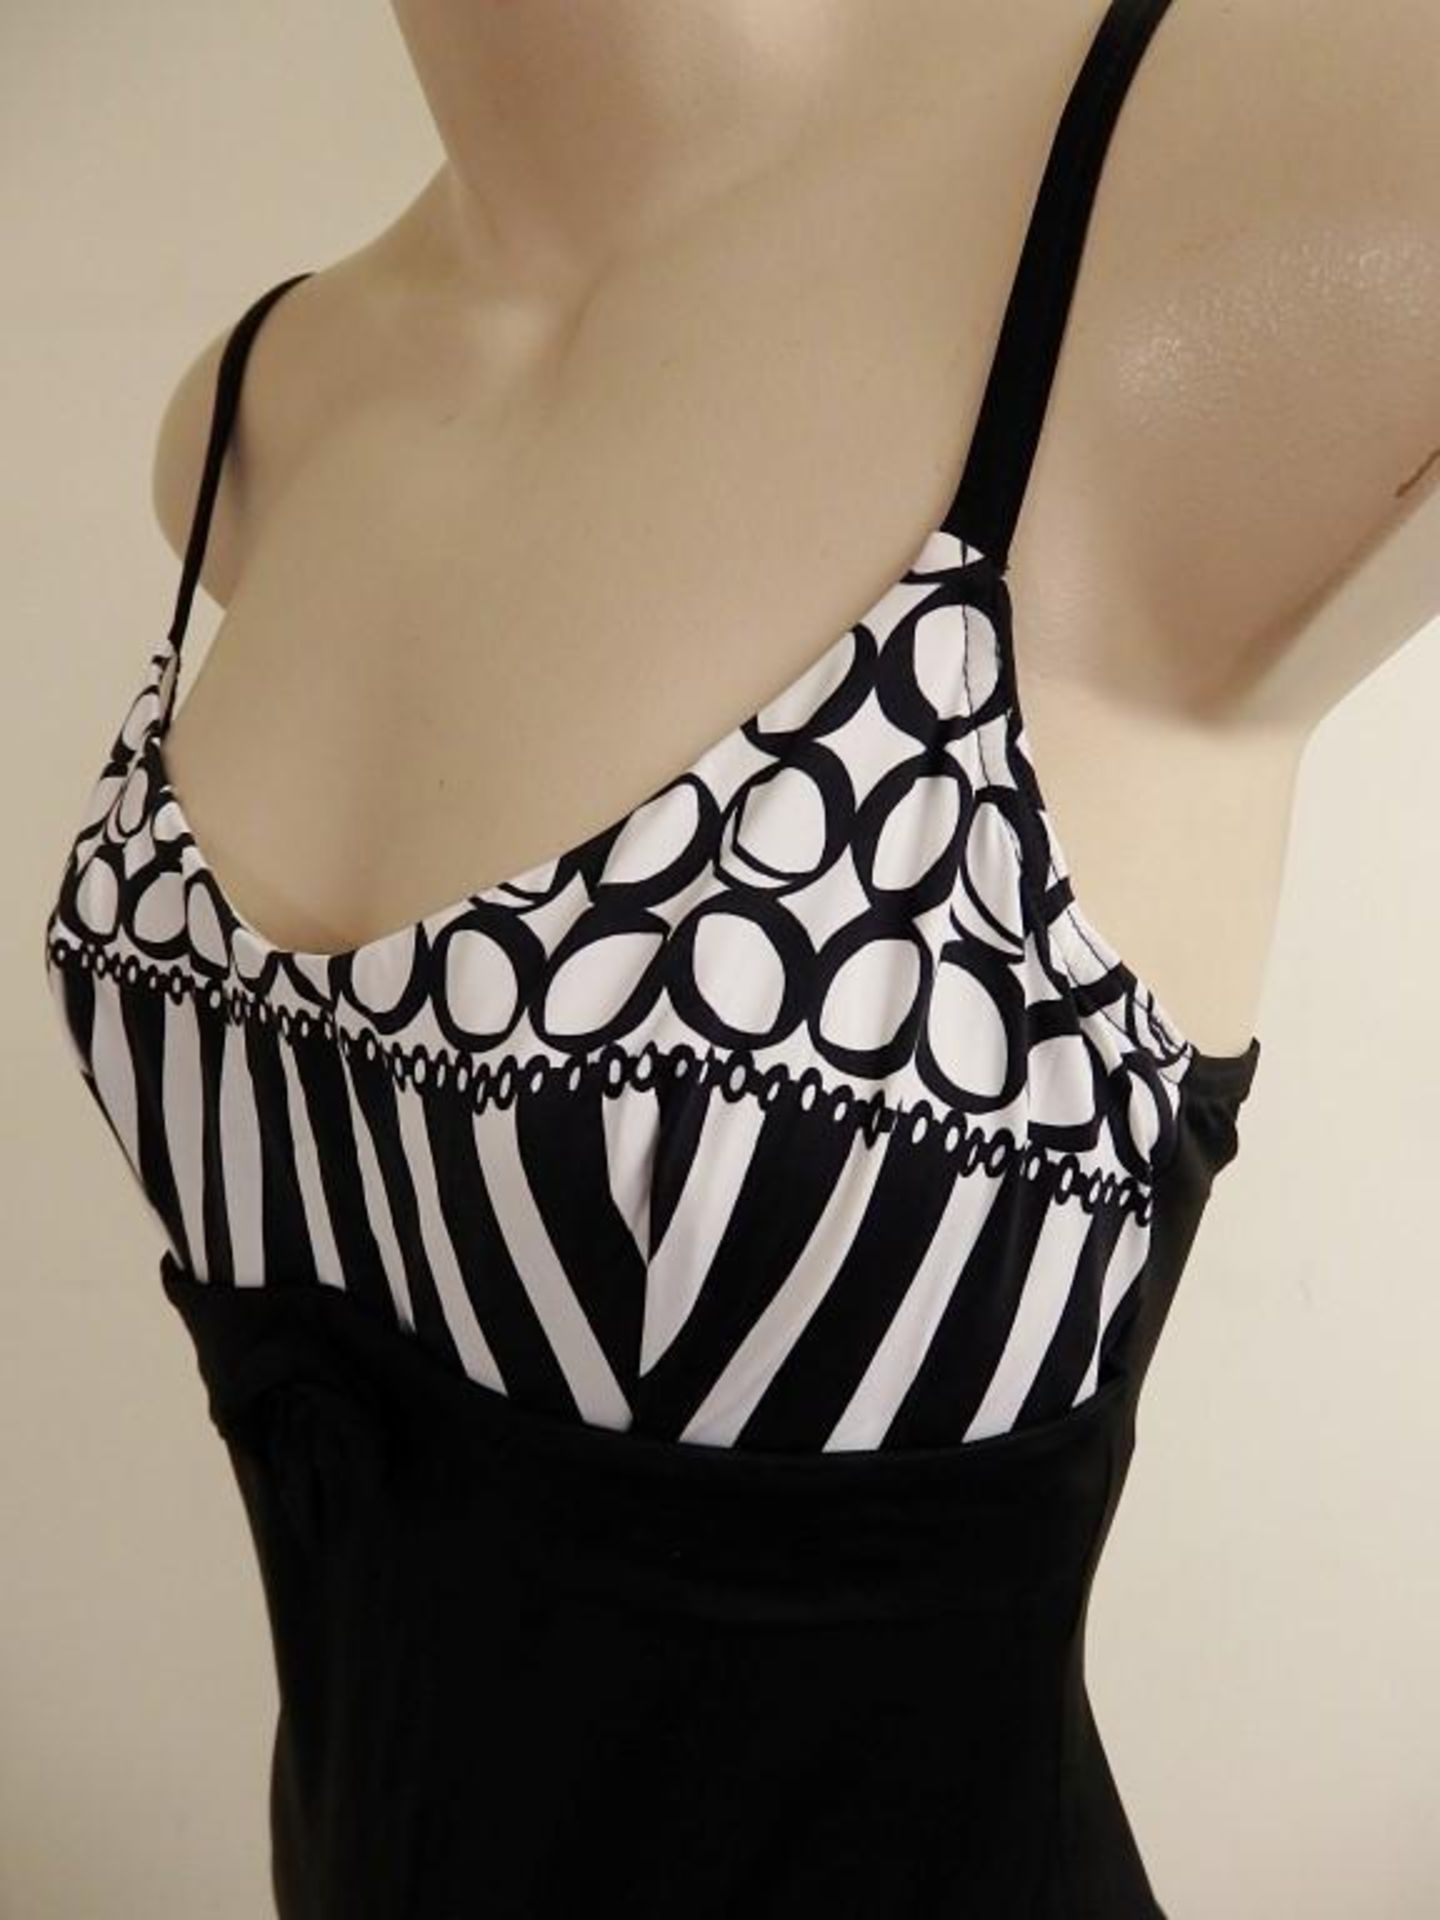 1 x Rasurel - Black/White patterned - Borneo Swimsuit - R20435 - Size 2C - UK 32 - Fr 85 - EU/Int 7 - Image 3 of 5